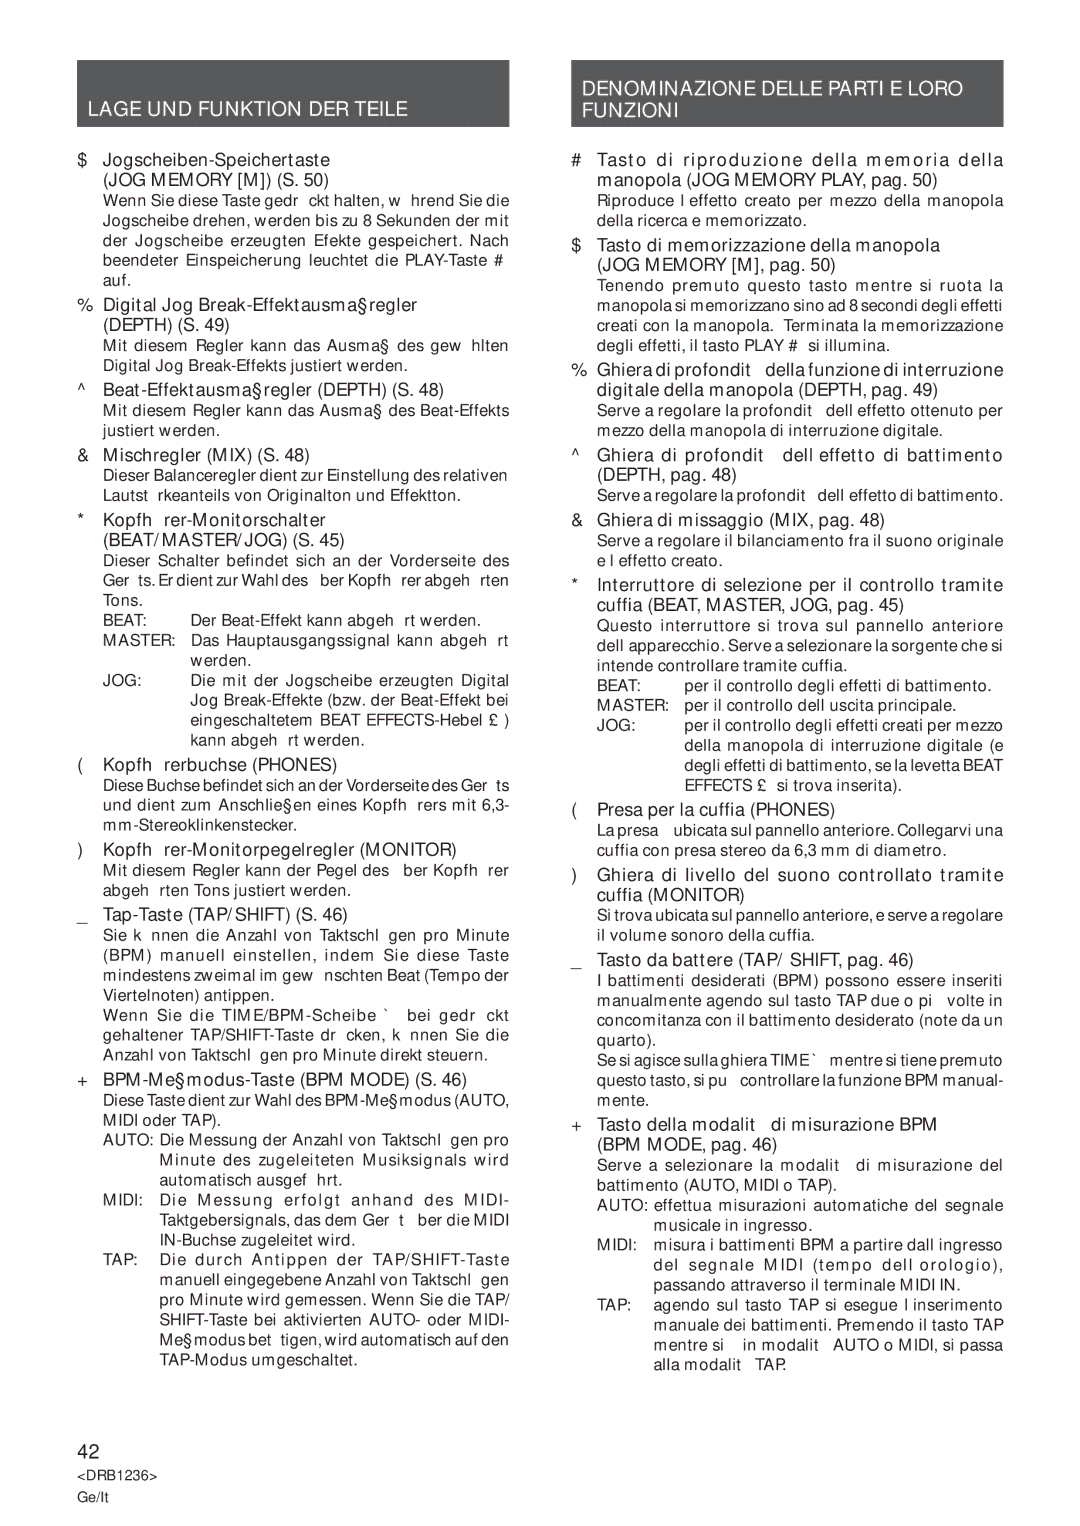 Pioneer Efx-500 operating instructions Denominazione Delle Parti E Loro Funzioni 